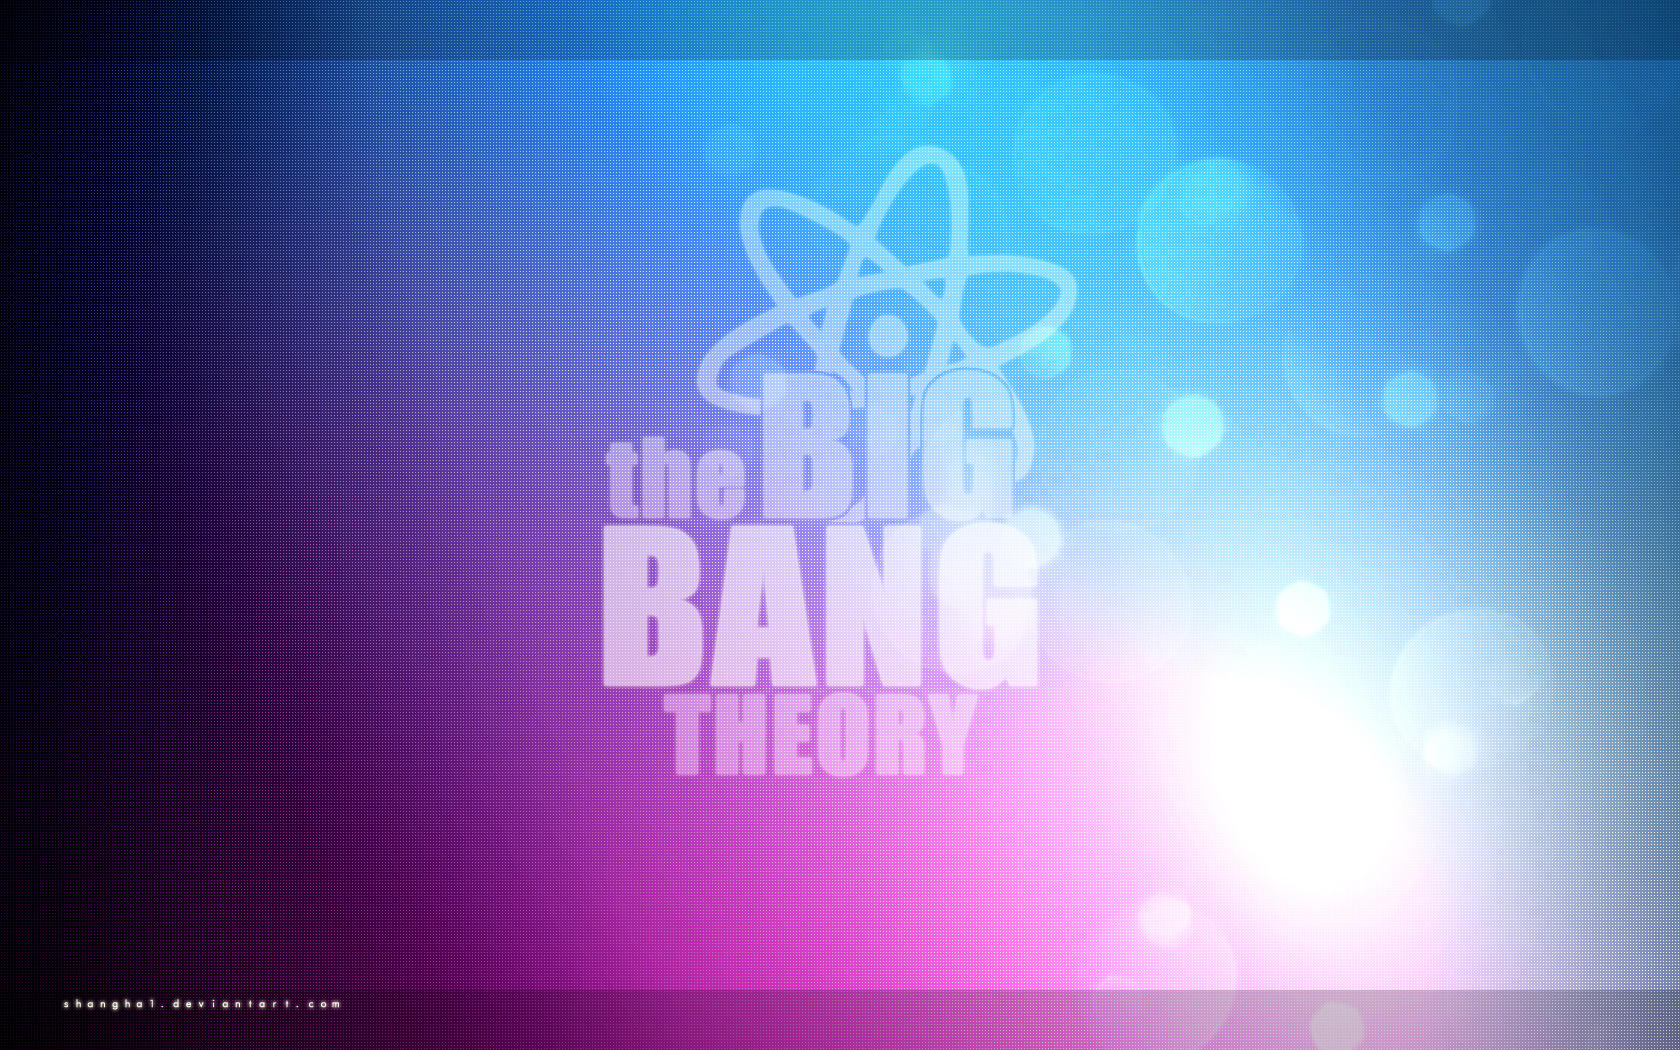 Big Bang Theory Wallpaper by shangha1 on DeviantArt